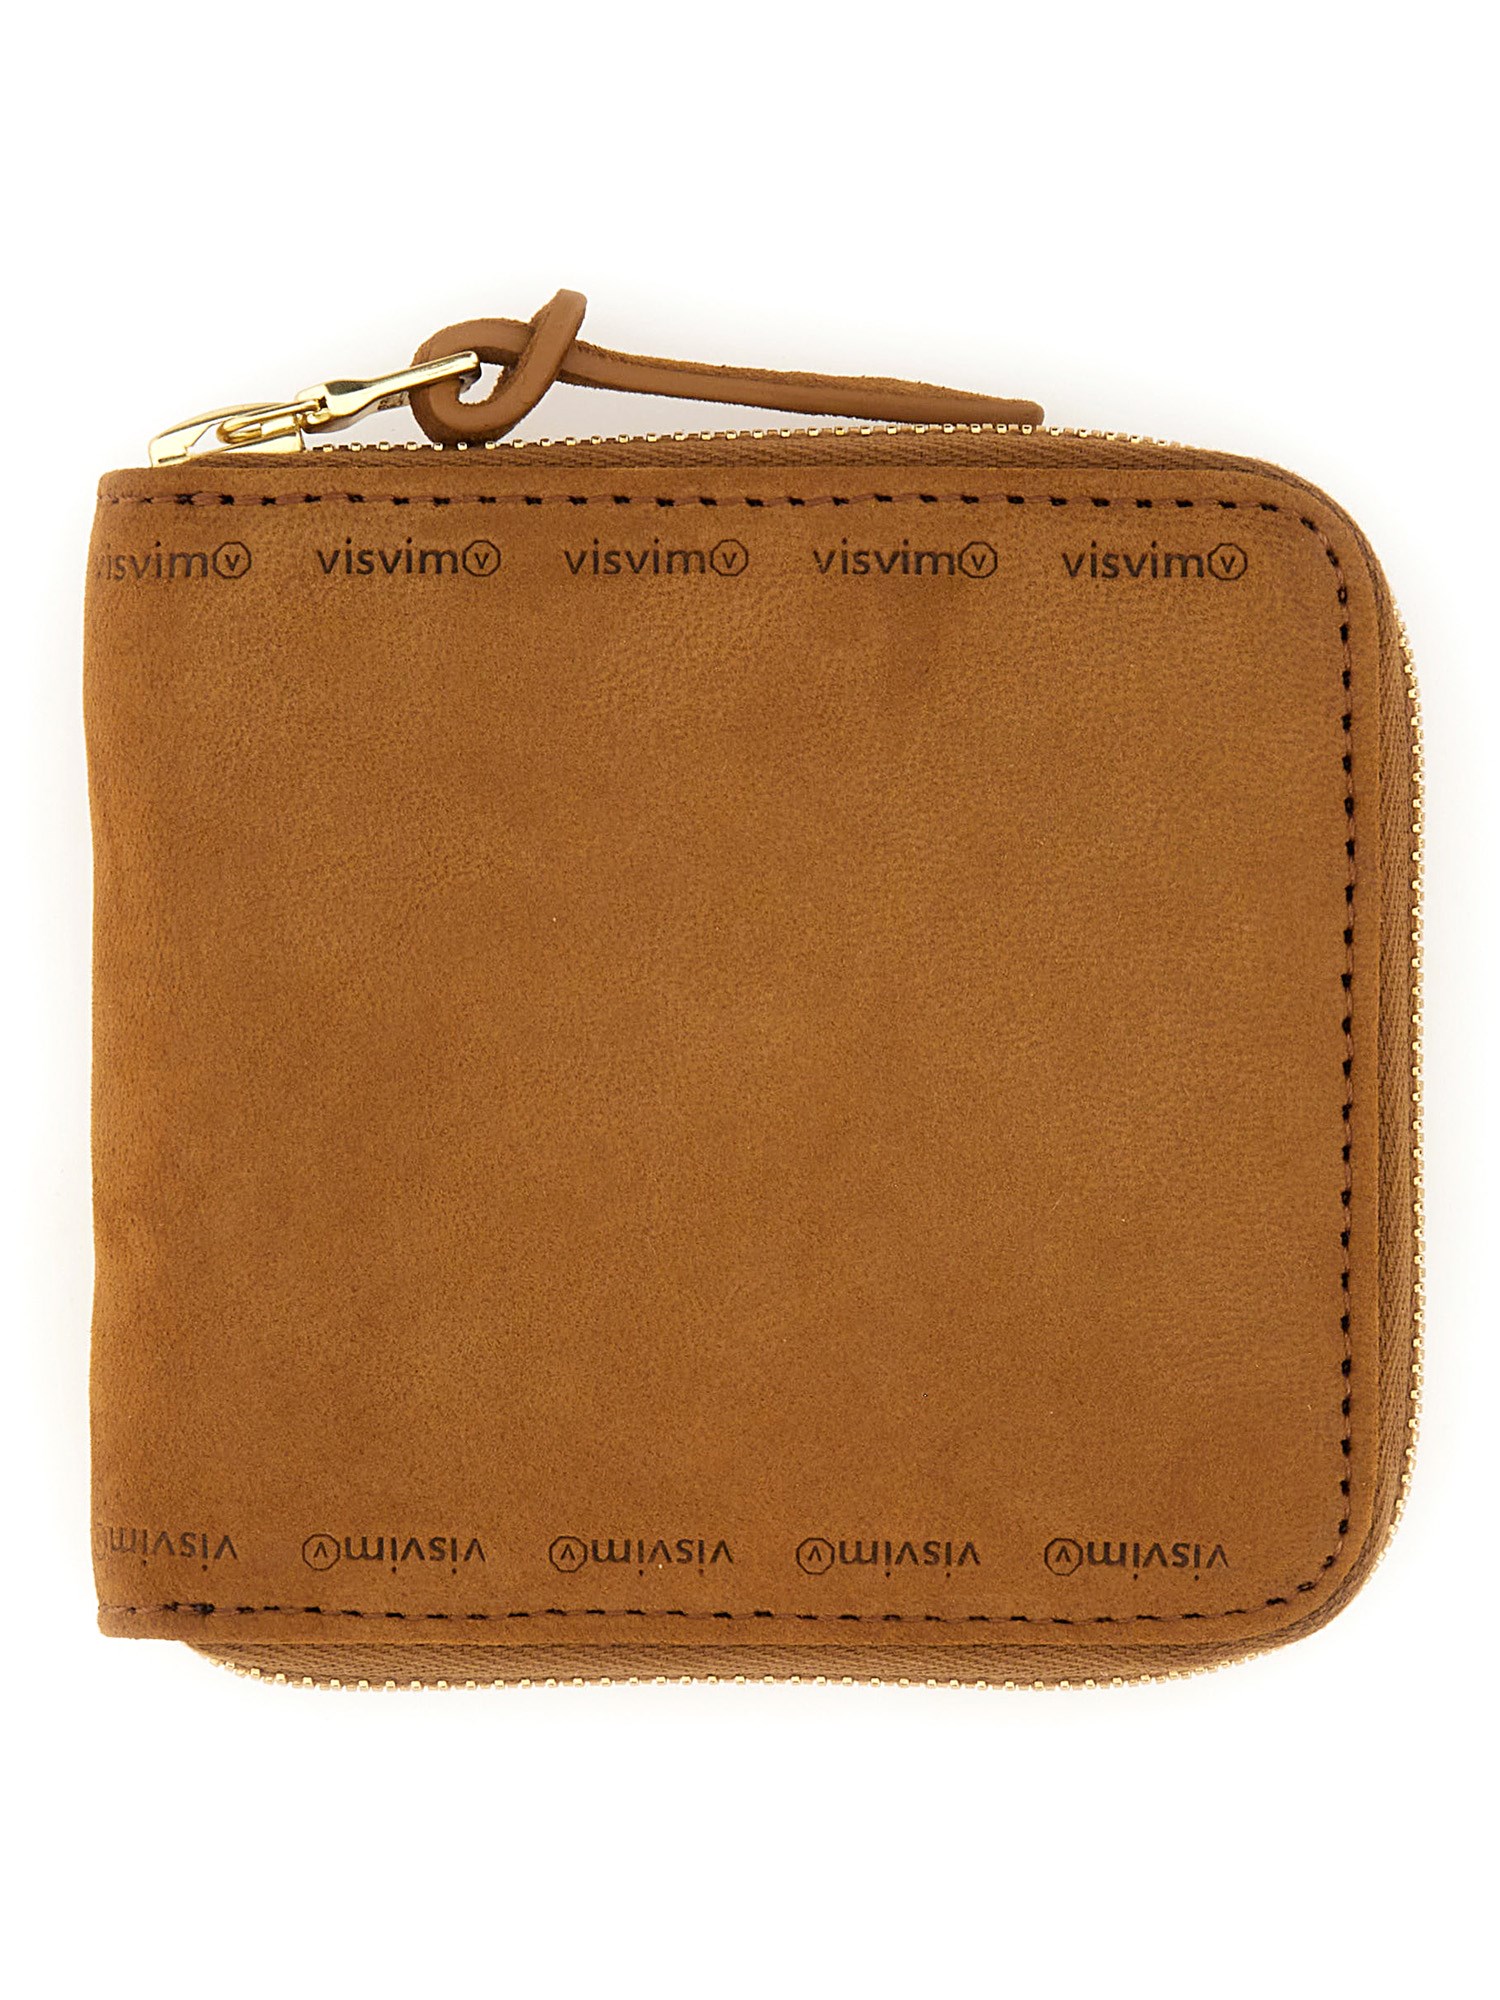 visvim leather wallet